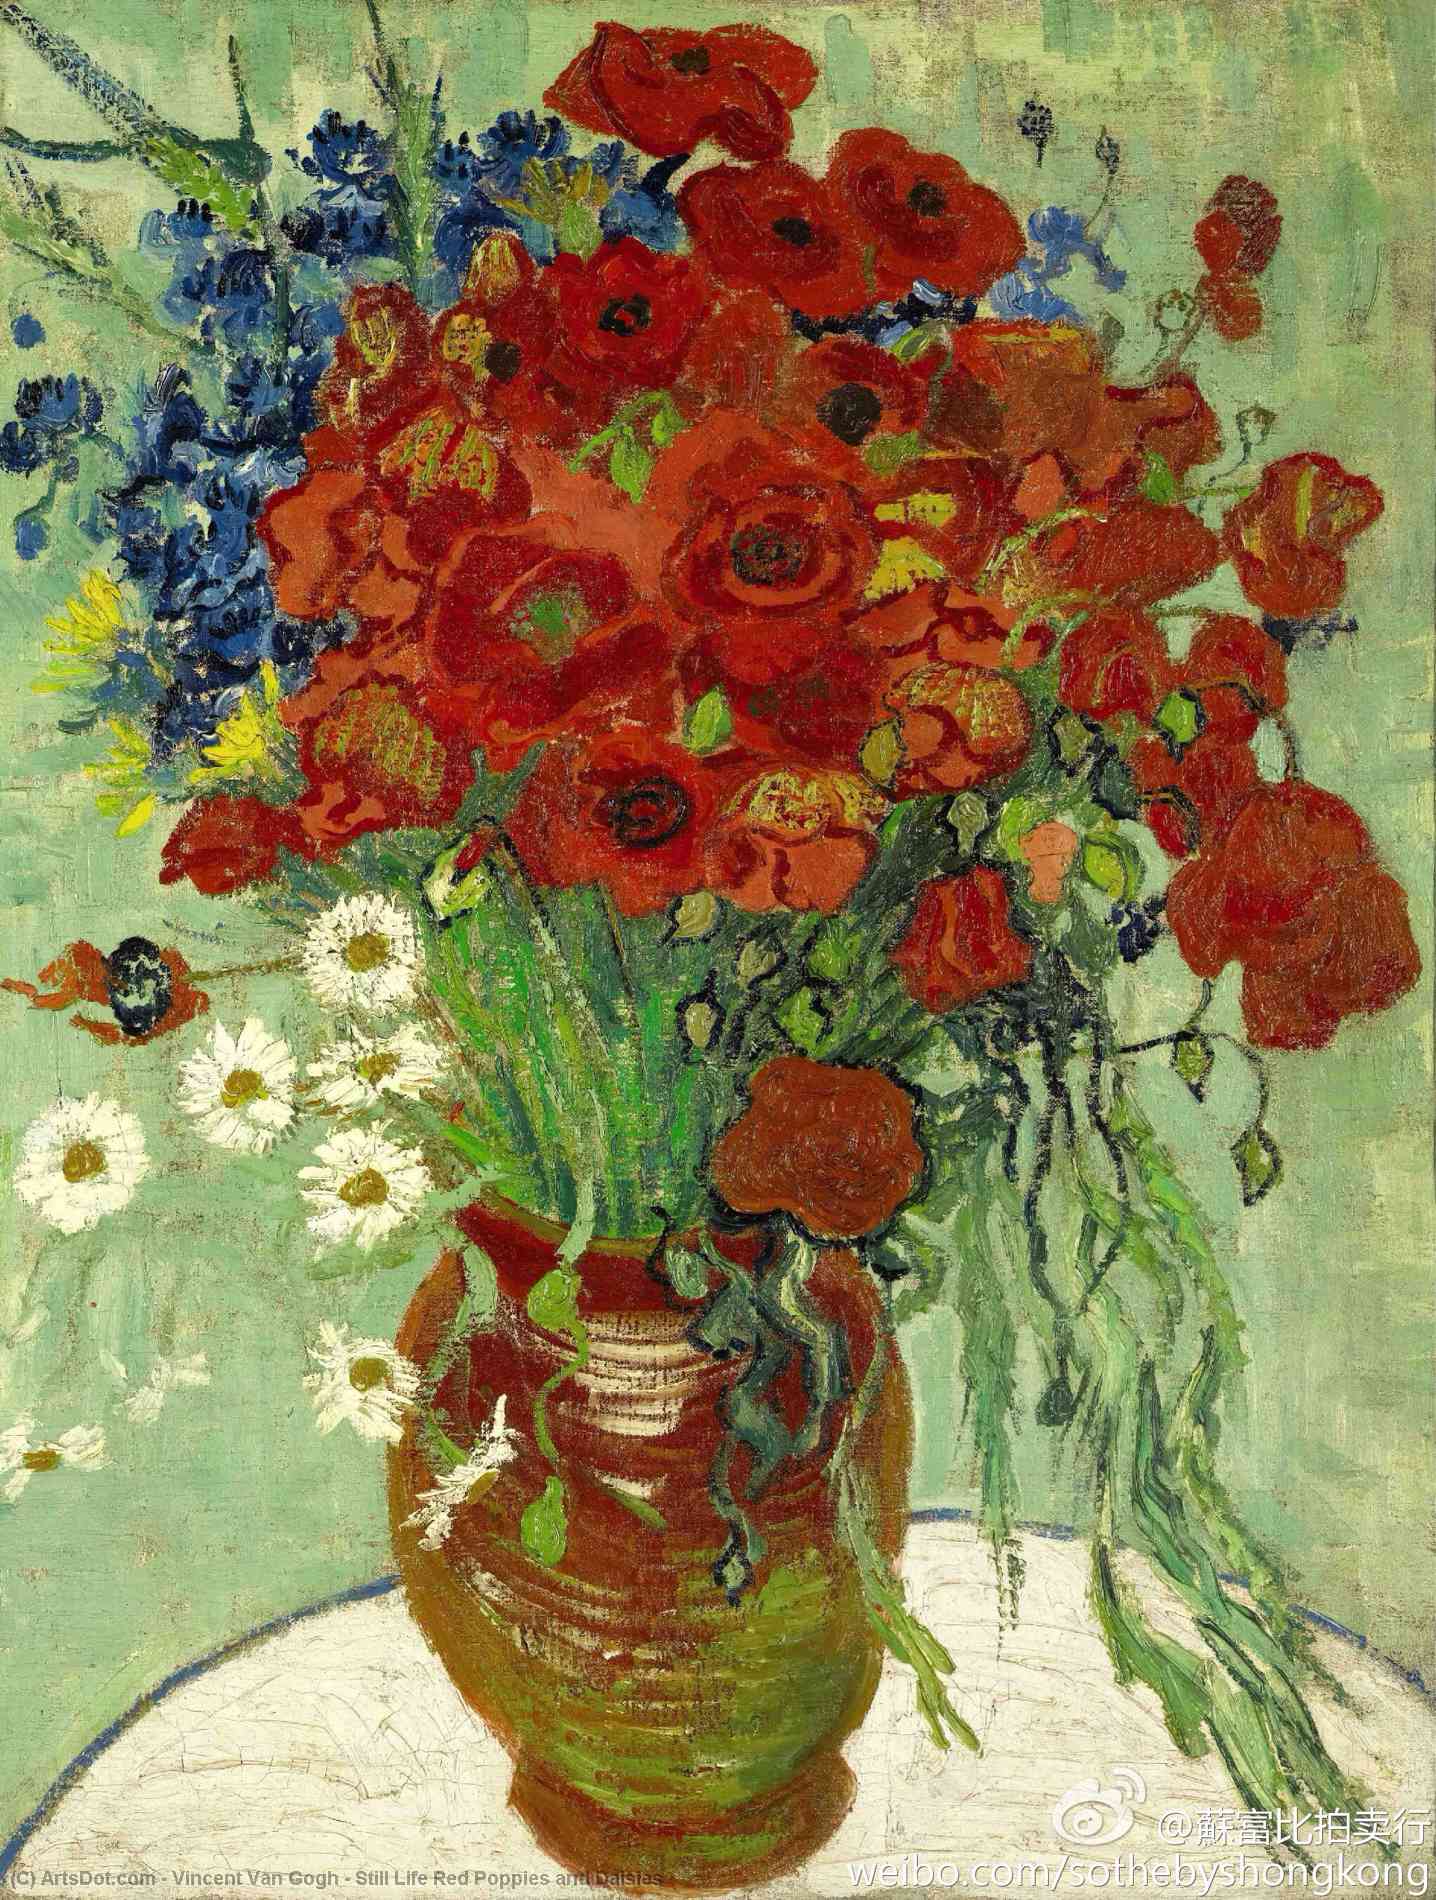 Wikioo.org - Bách khoa toàn thư về mỹ thuật - Vẽ tranh, Tác phẩm nghệ thuật Vincent Van Gogh - Still Life Red Poppies and Daisies